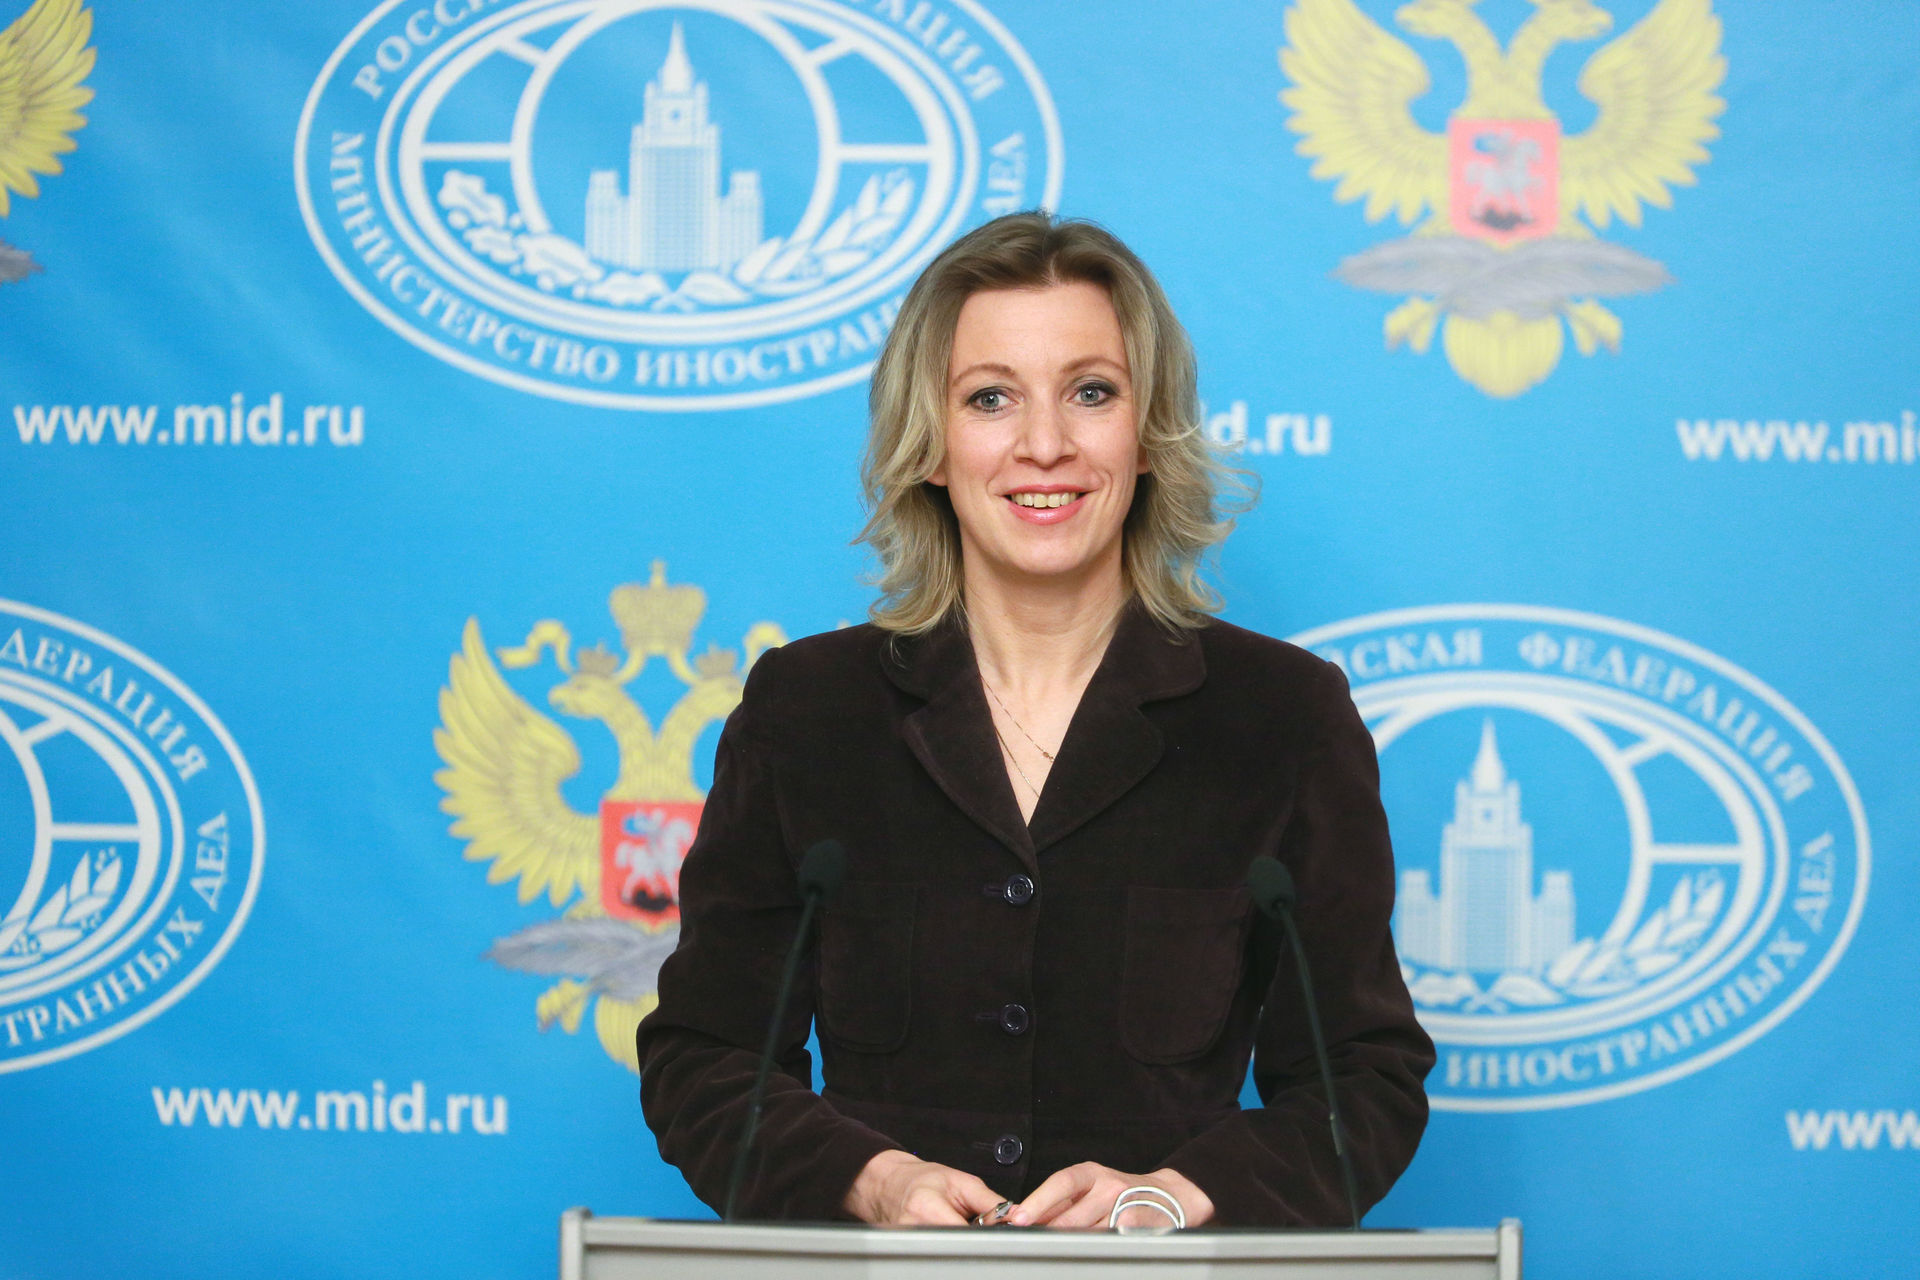  Мария Захарова дала характеристику депутатам Рады, переименовавшим Днепропетровск - фото 1